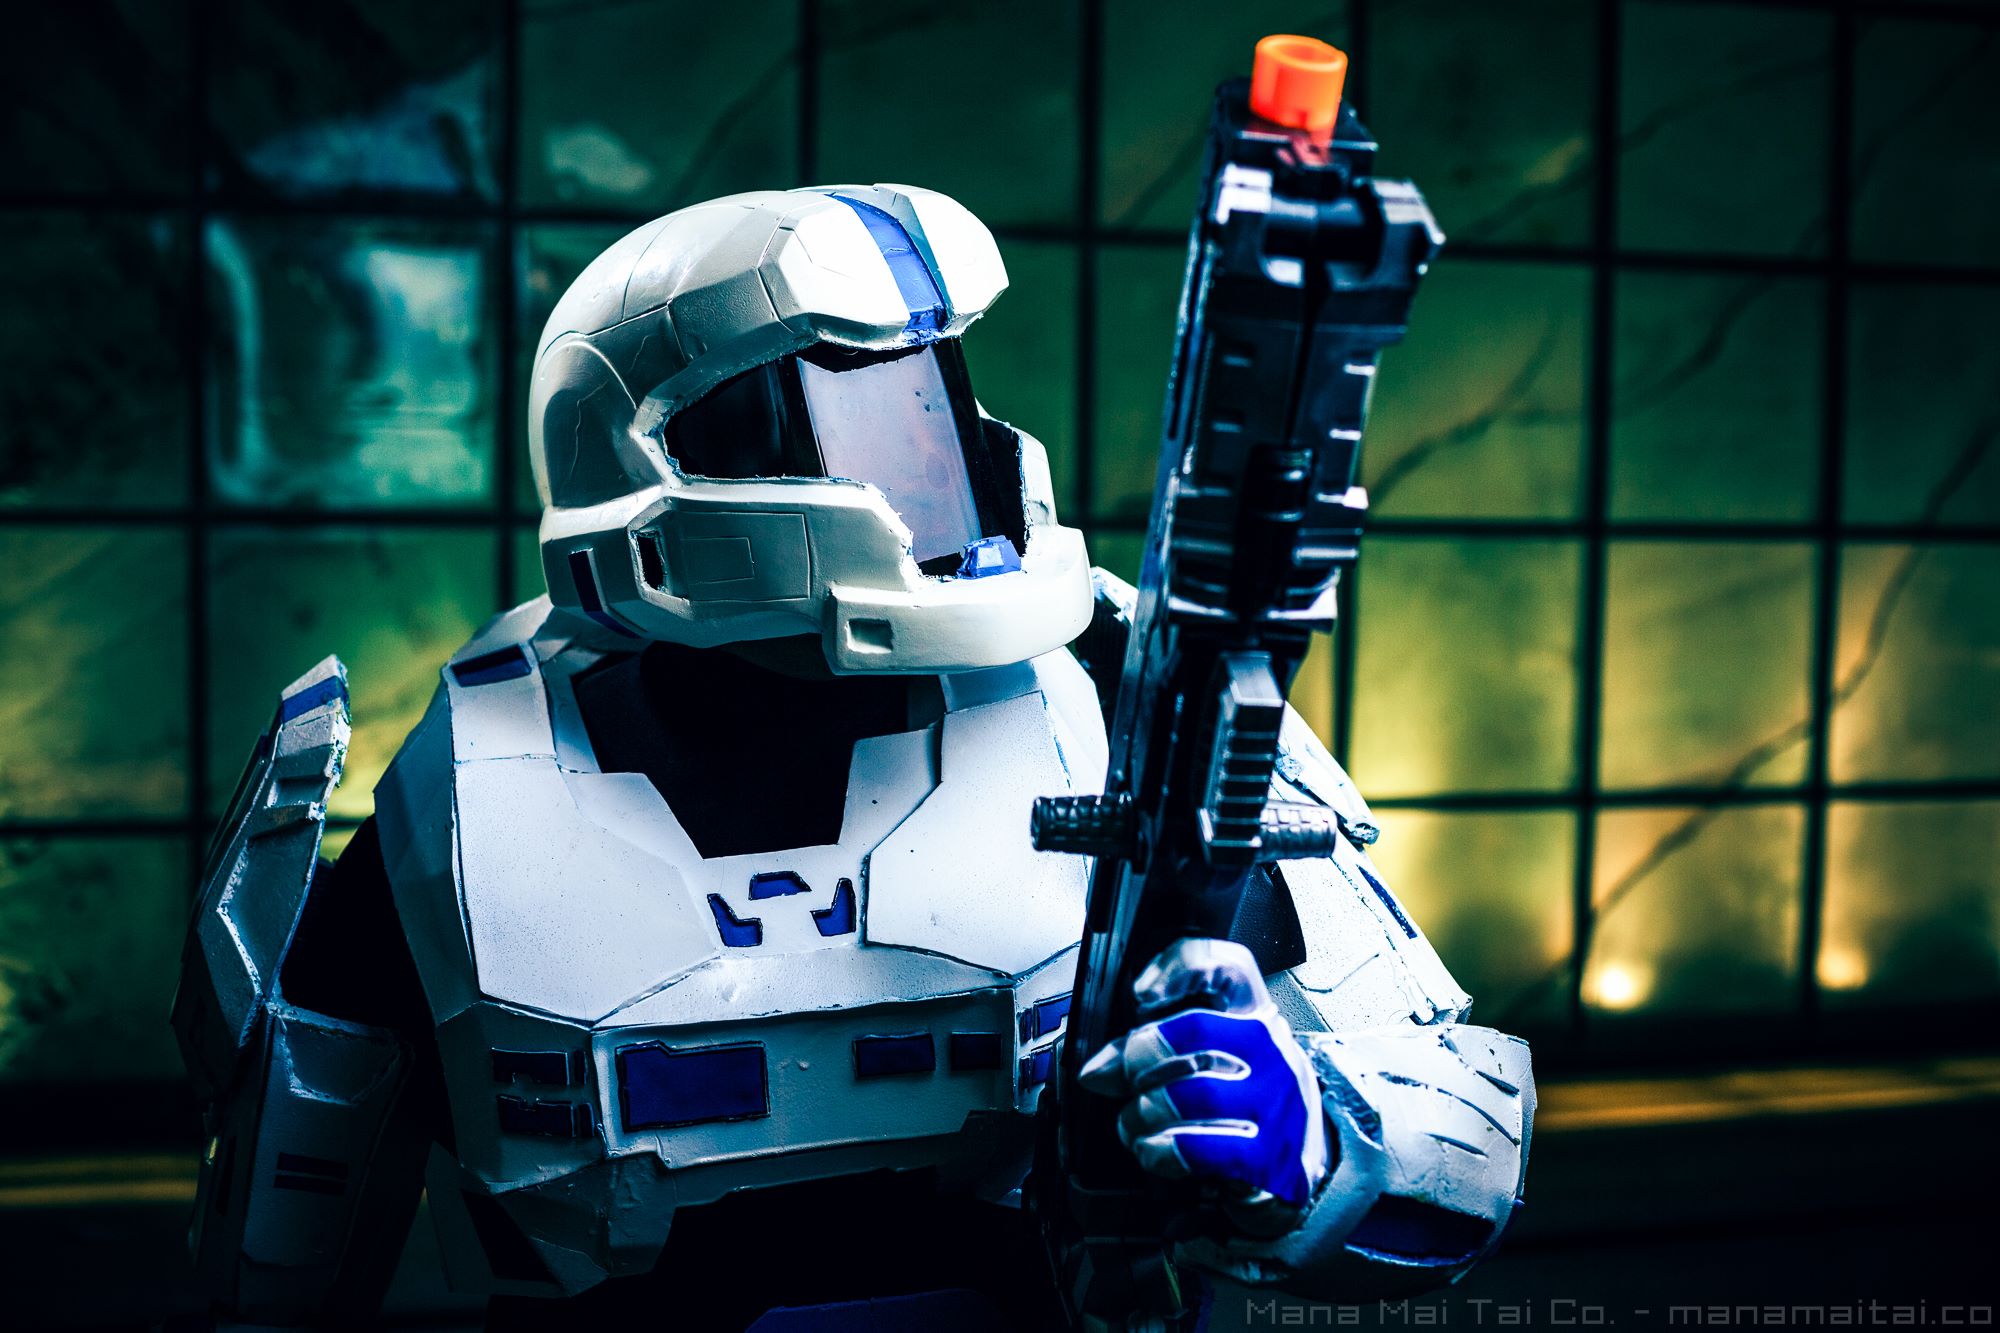 Halo Spartan R2-D2.
Photo by Ed White